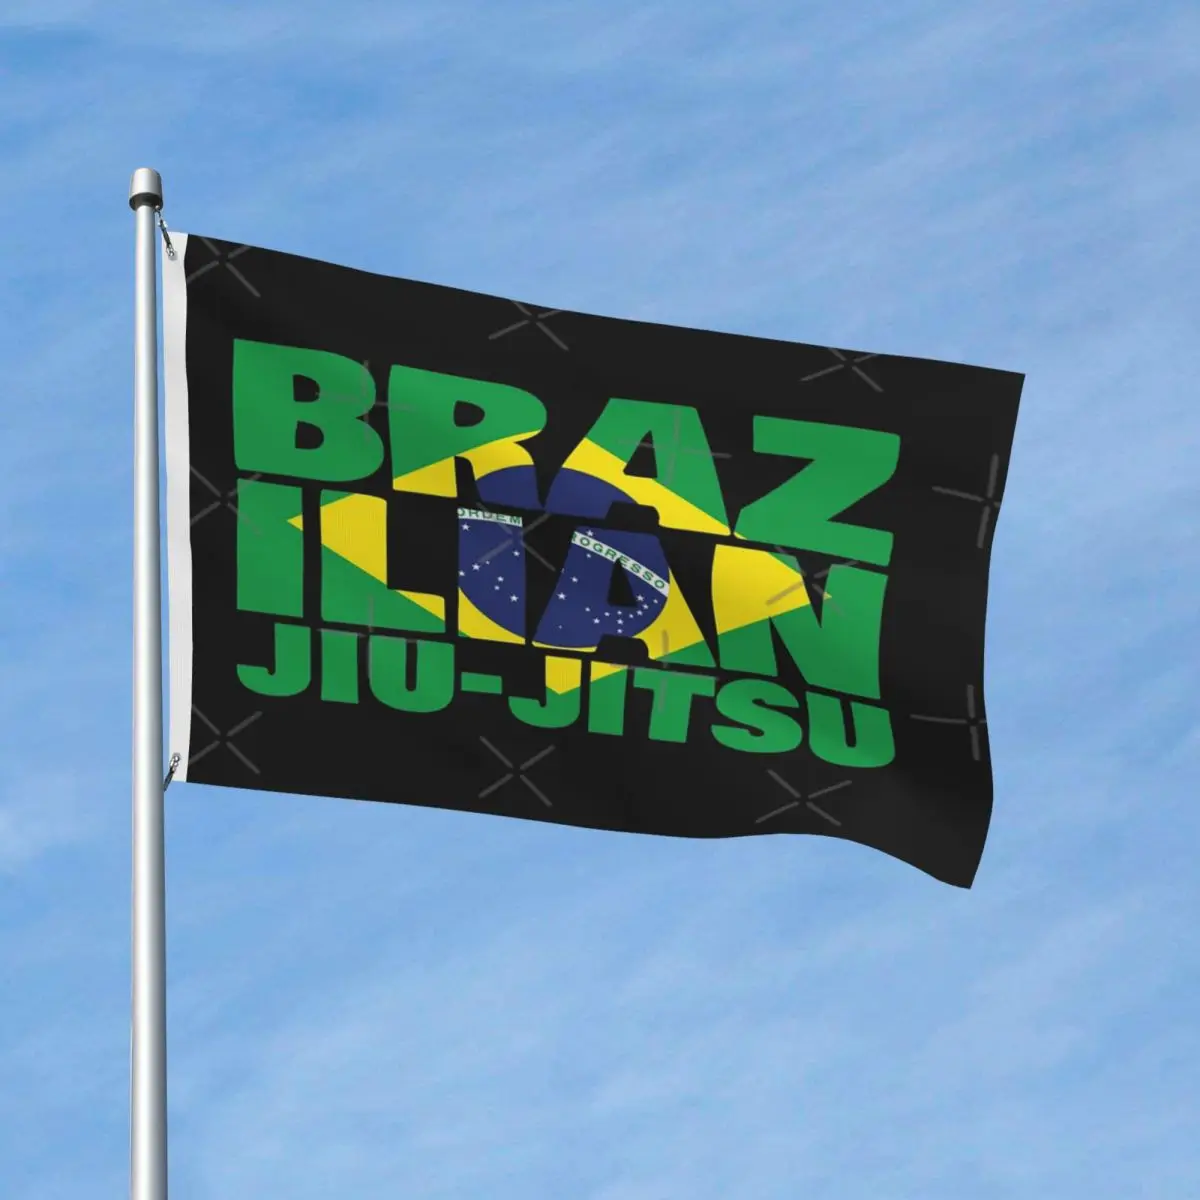 

Флаг бразильского джиу-джитсу, флаг, винтажный, легко повесить, яркие цвета, полиэстер, легкий, изысканный, несколько стилей